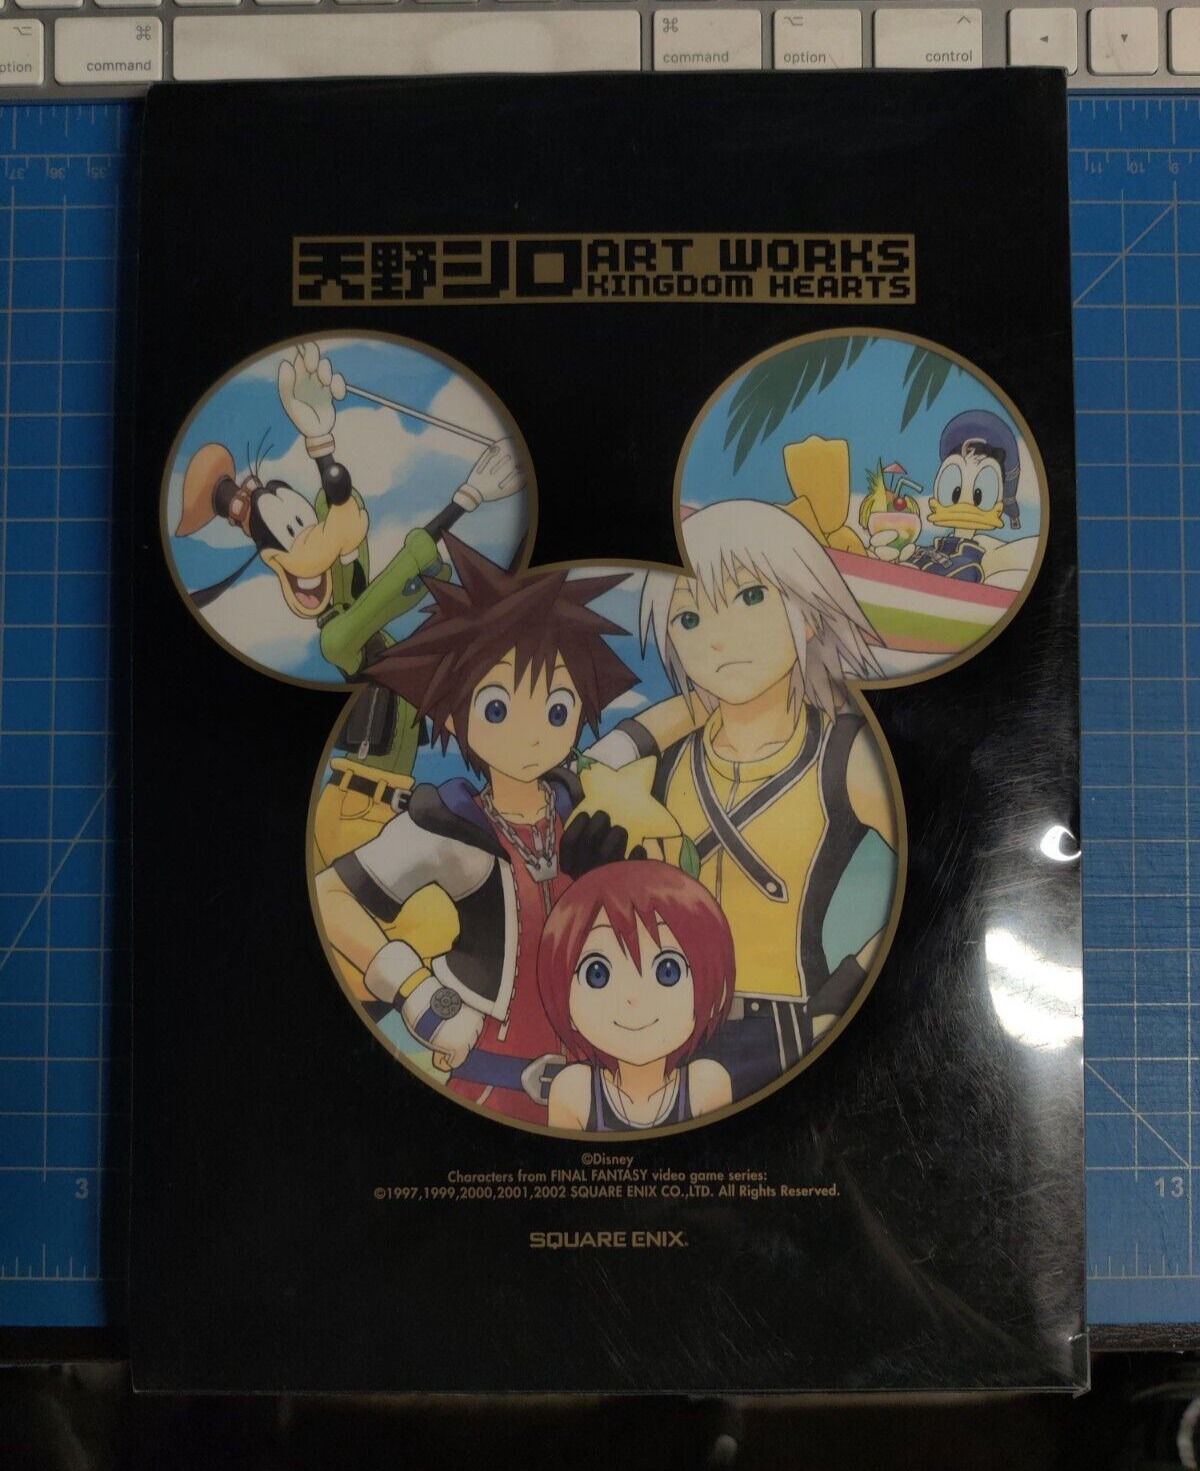 2008 Shiro Amano Art Works Kingdom Hearts Picture Book Disney Square Enix